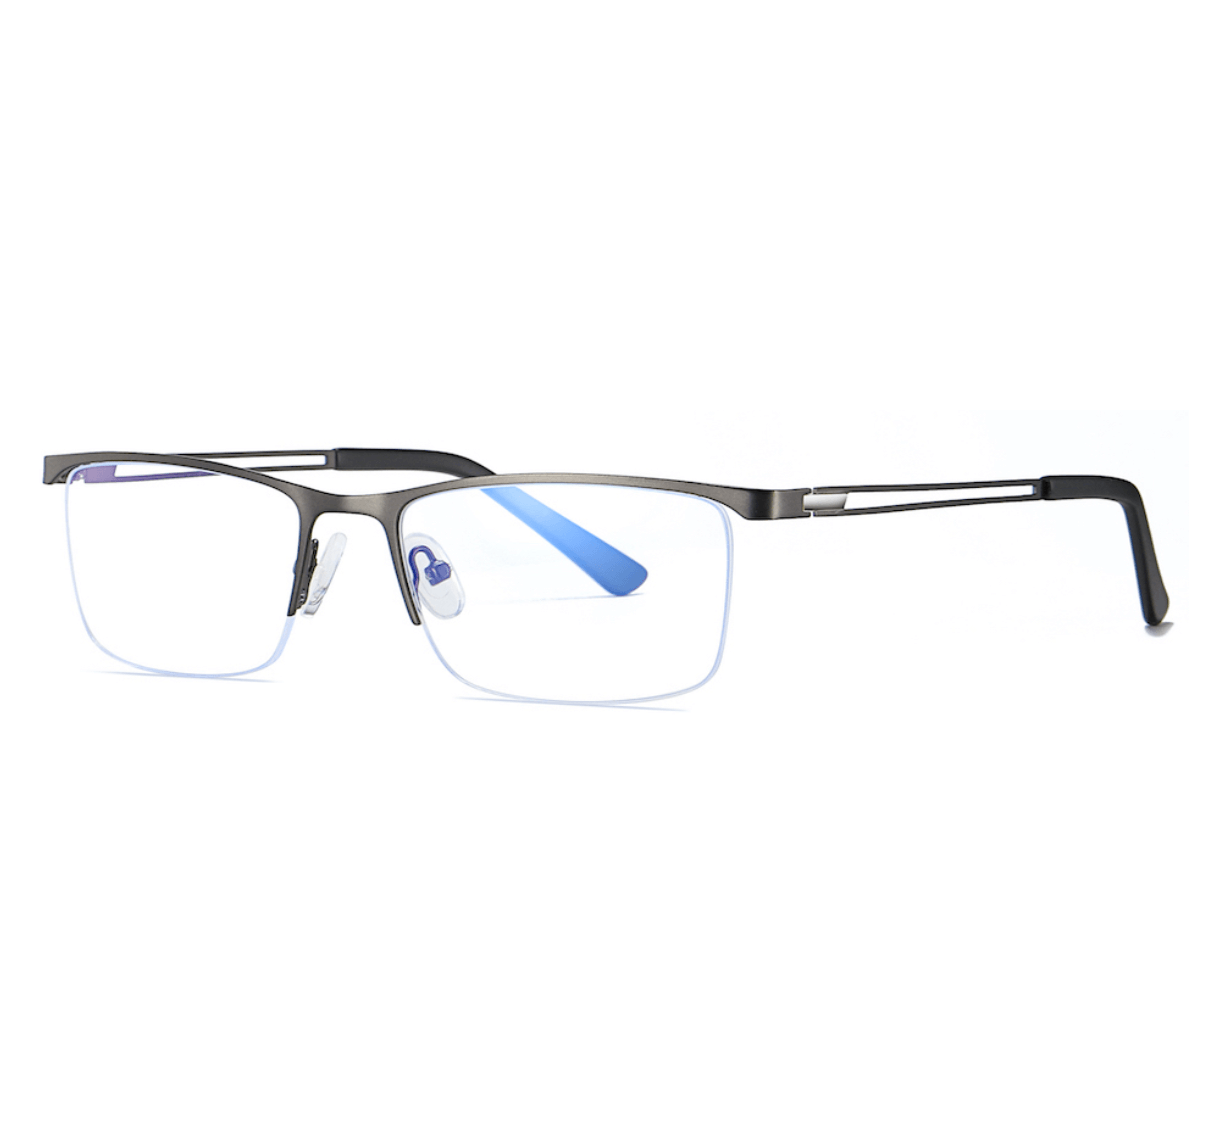 Square Half Rimless optical frame metal, glasses frames China, wholesale optical frames, custom made eyeglass frames